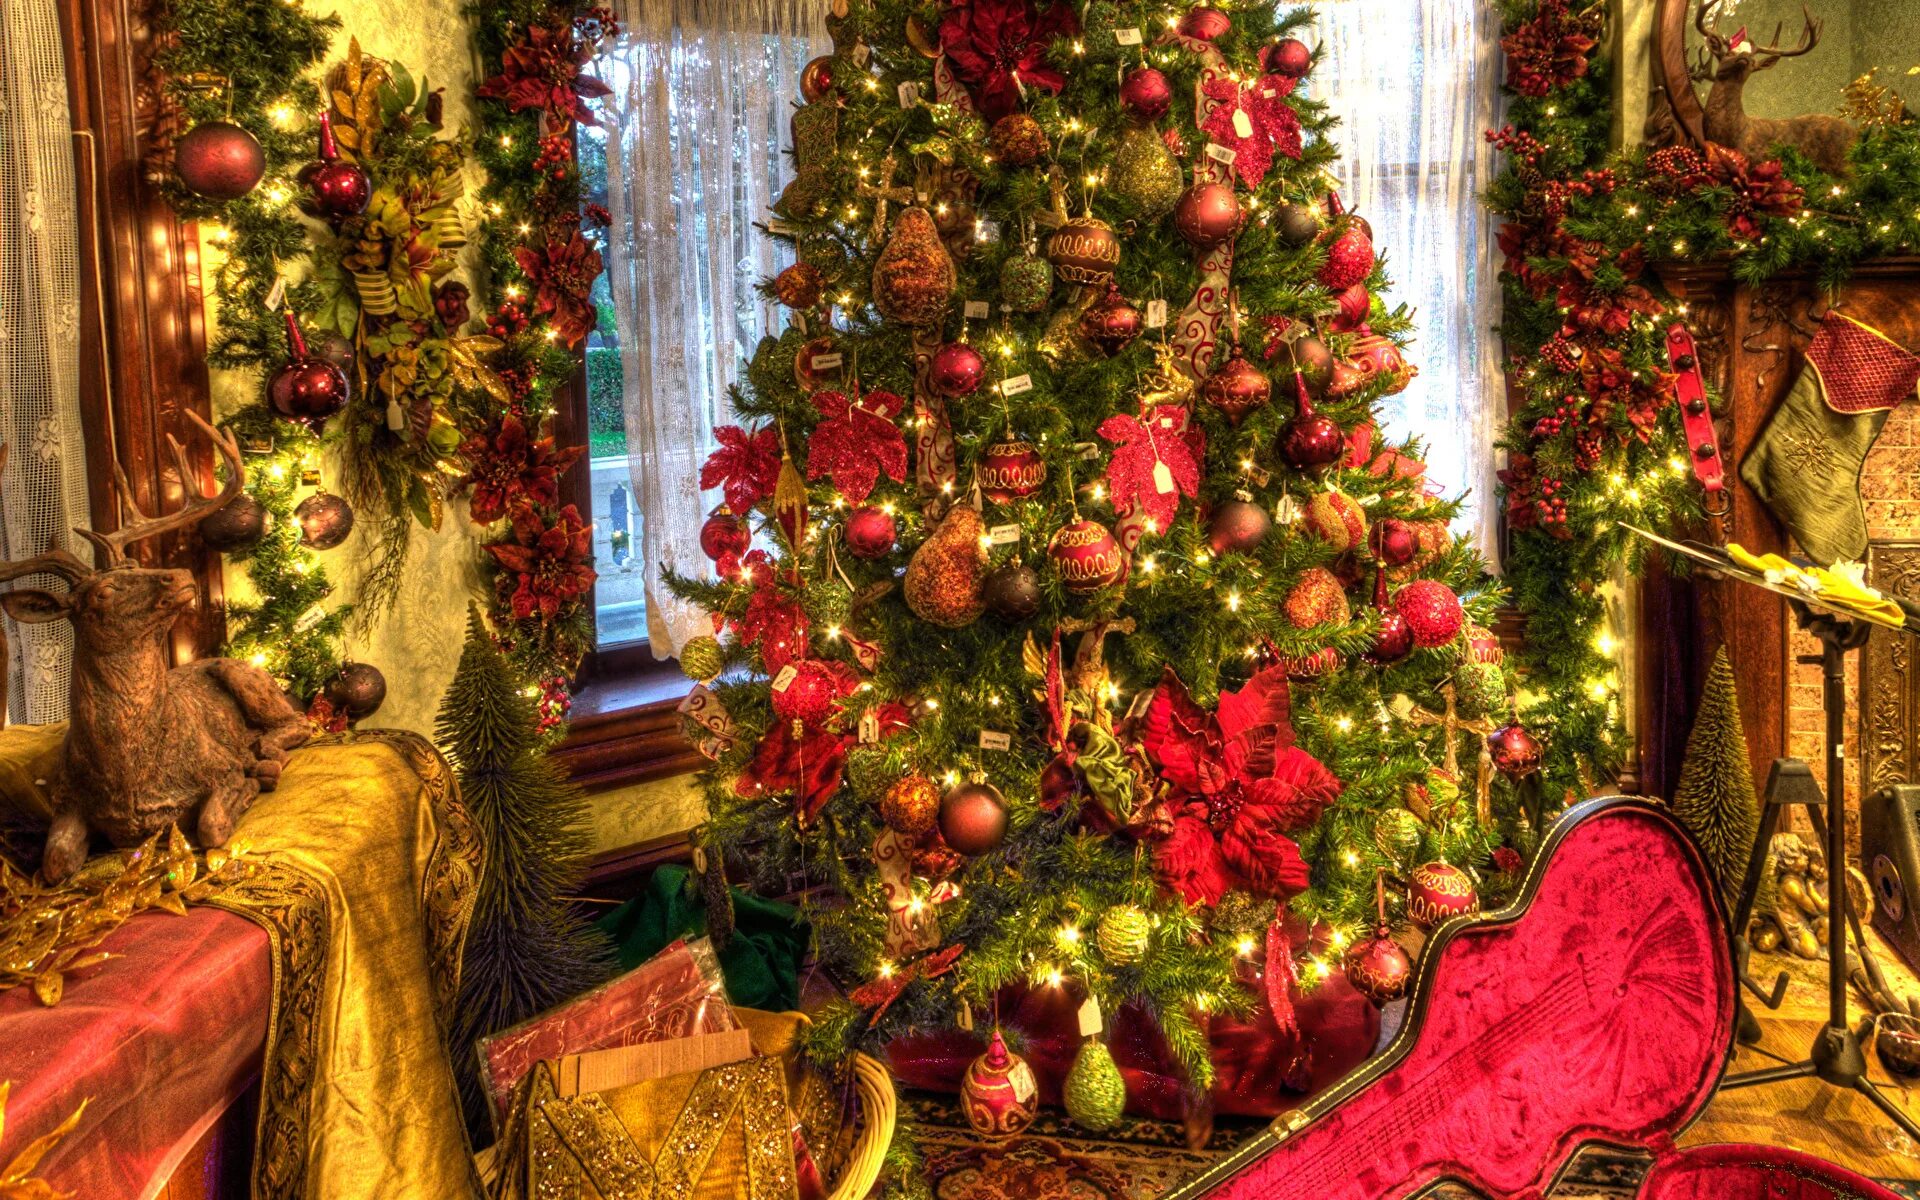 Посреди стояла красивая елка. Елка в старинном доме. Образцовый сказочный новогодний стол.